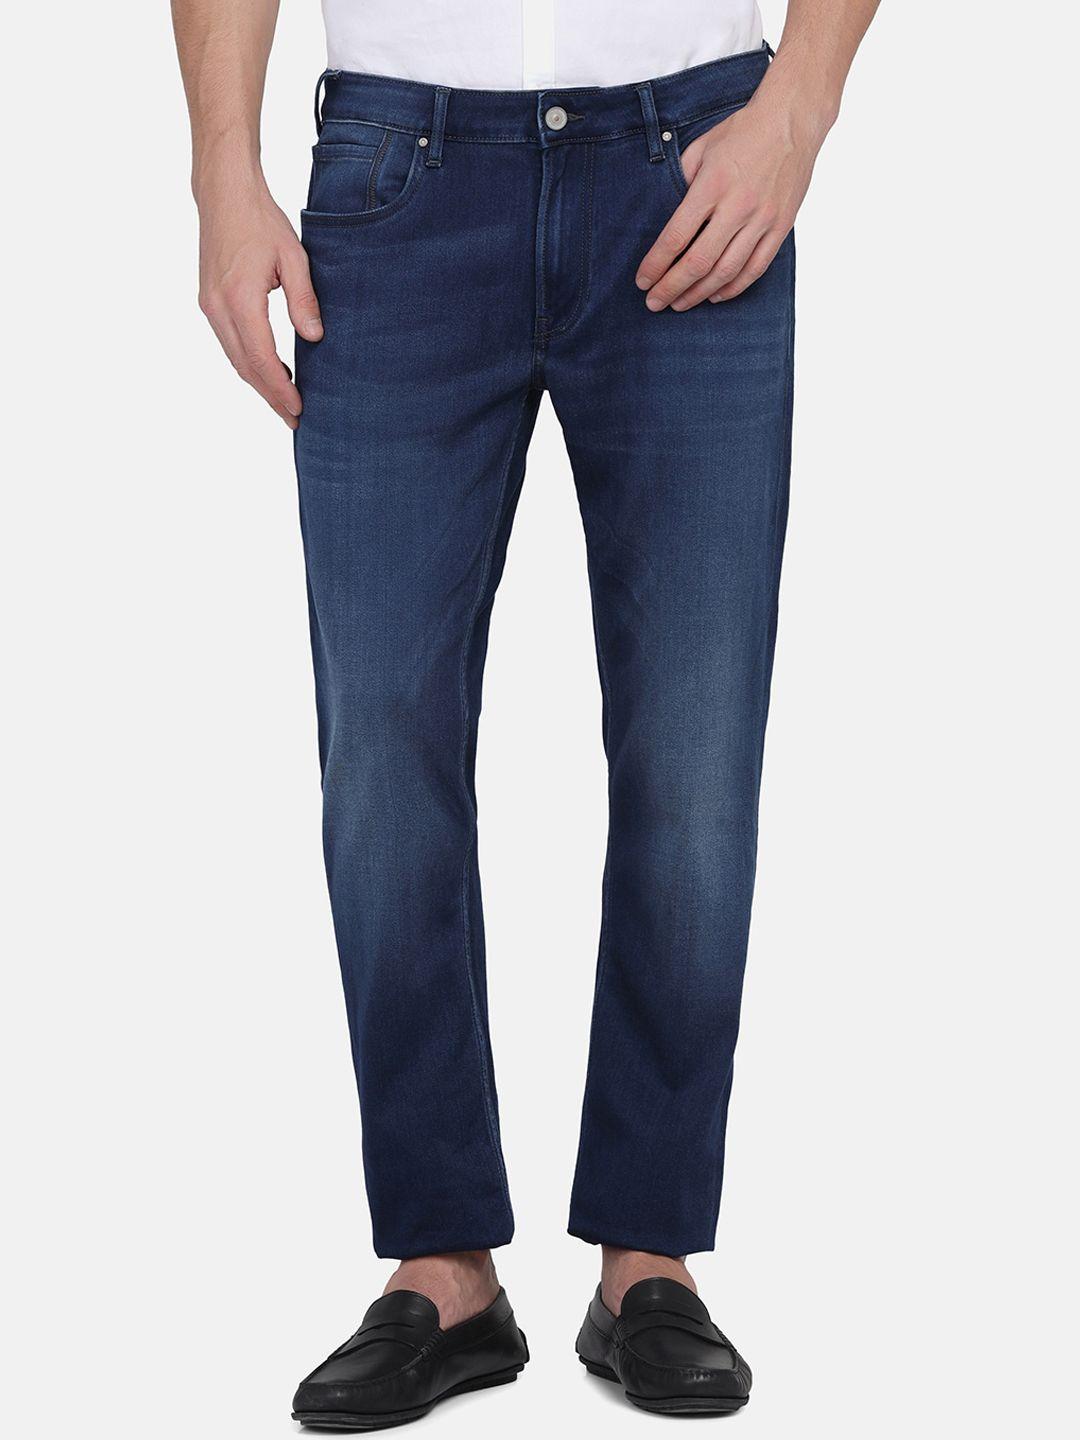 blackberrys-men-slim-fit-low-rise-light-fade-jeans